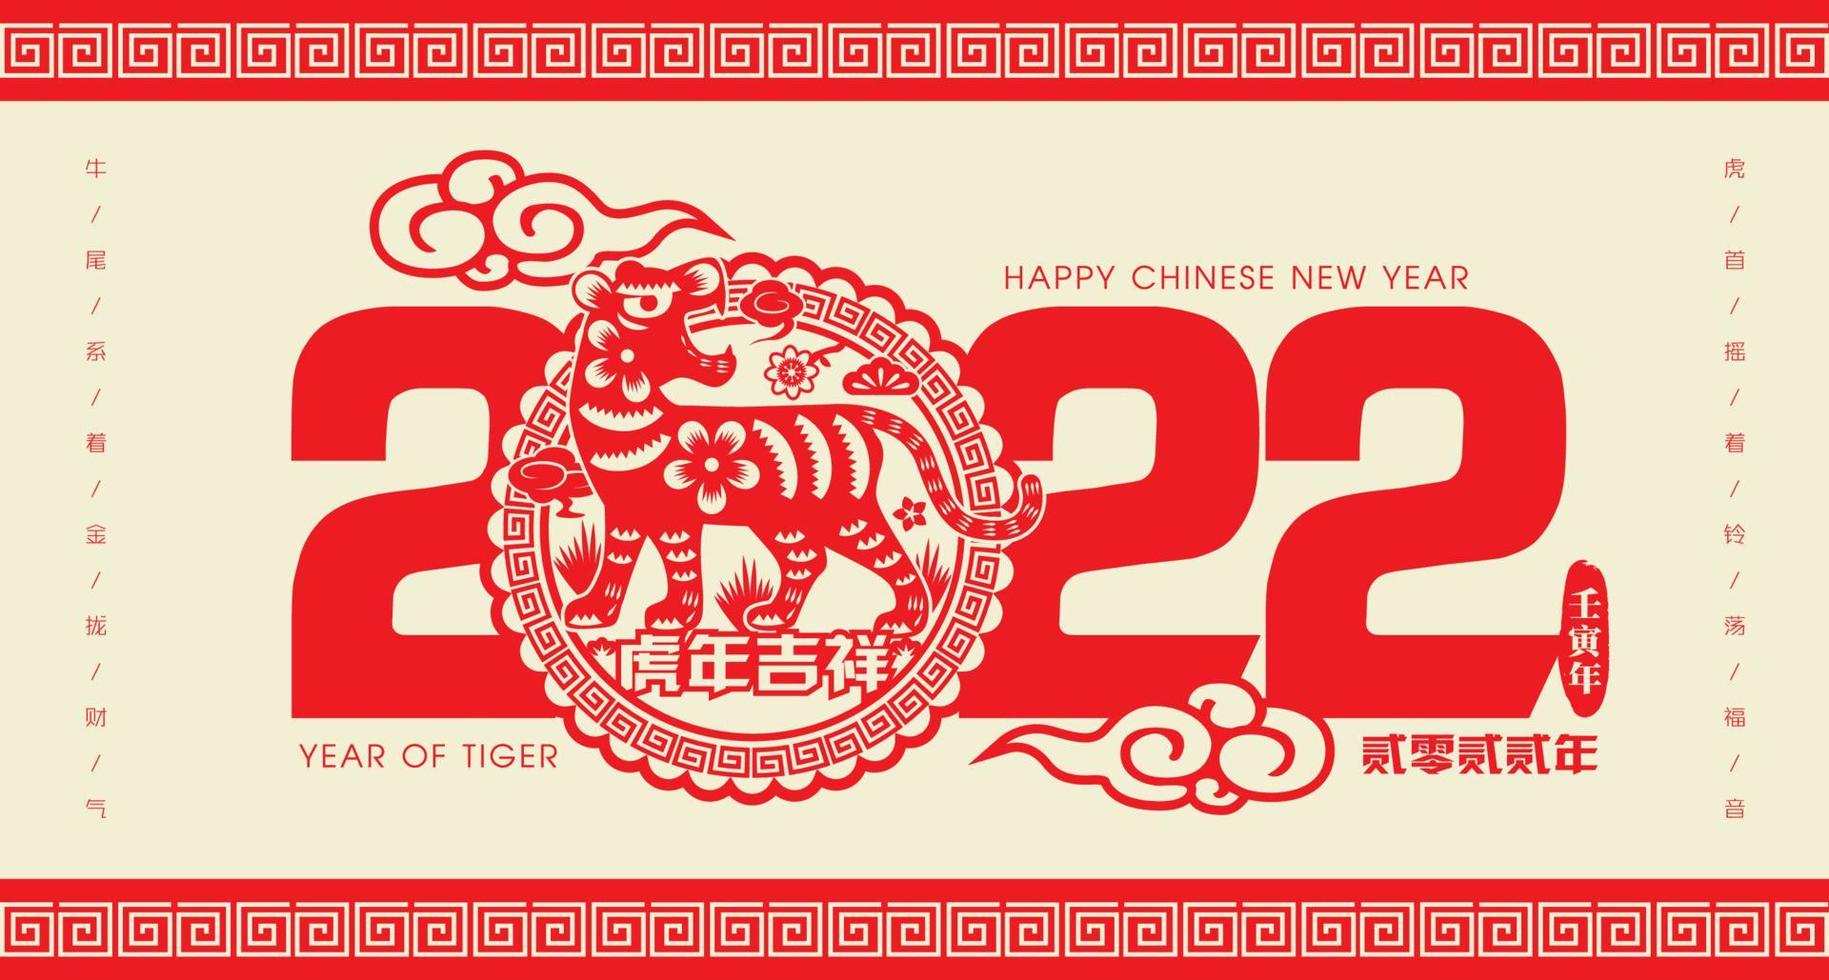 2022 Chinees Nieuwjaar tijger papier snijden vectorillustratie. vertaling gunstig jaar van de tijger, geluk jaar pro vector